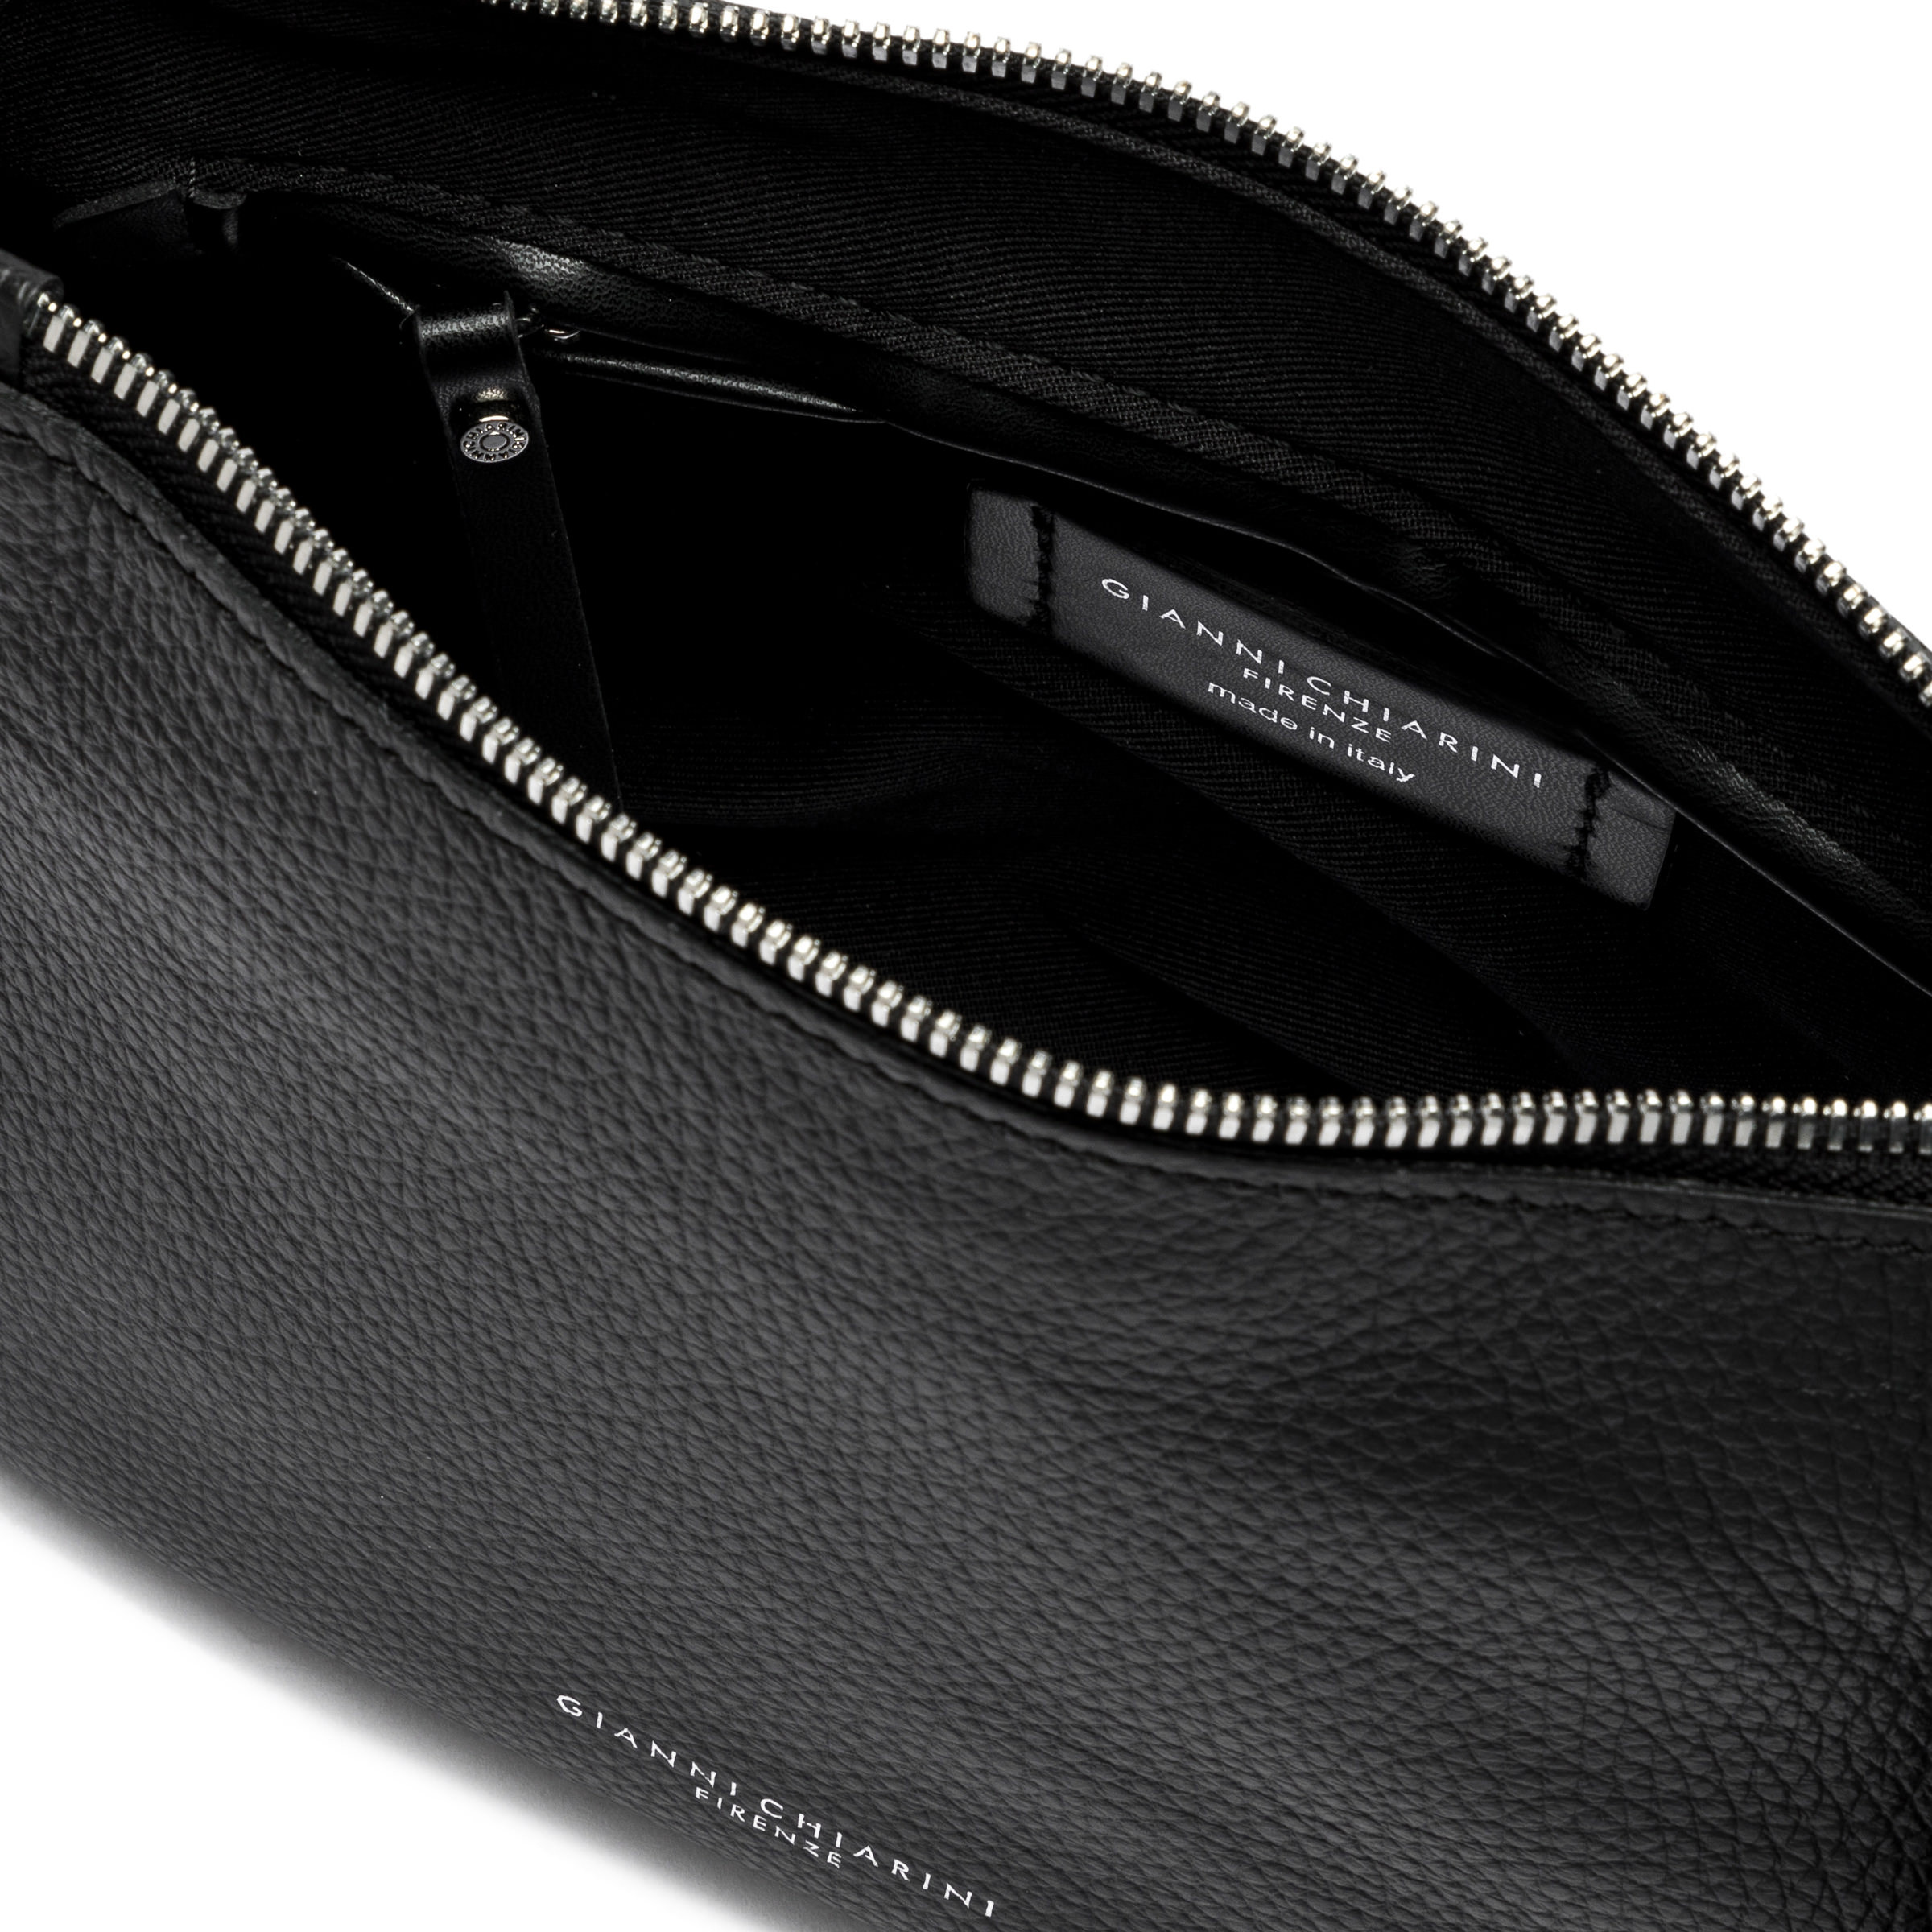 Gianni Chiarini - Nadia Leather bag, Black, large image number 5